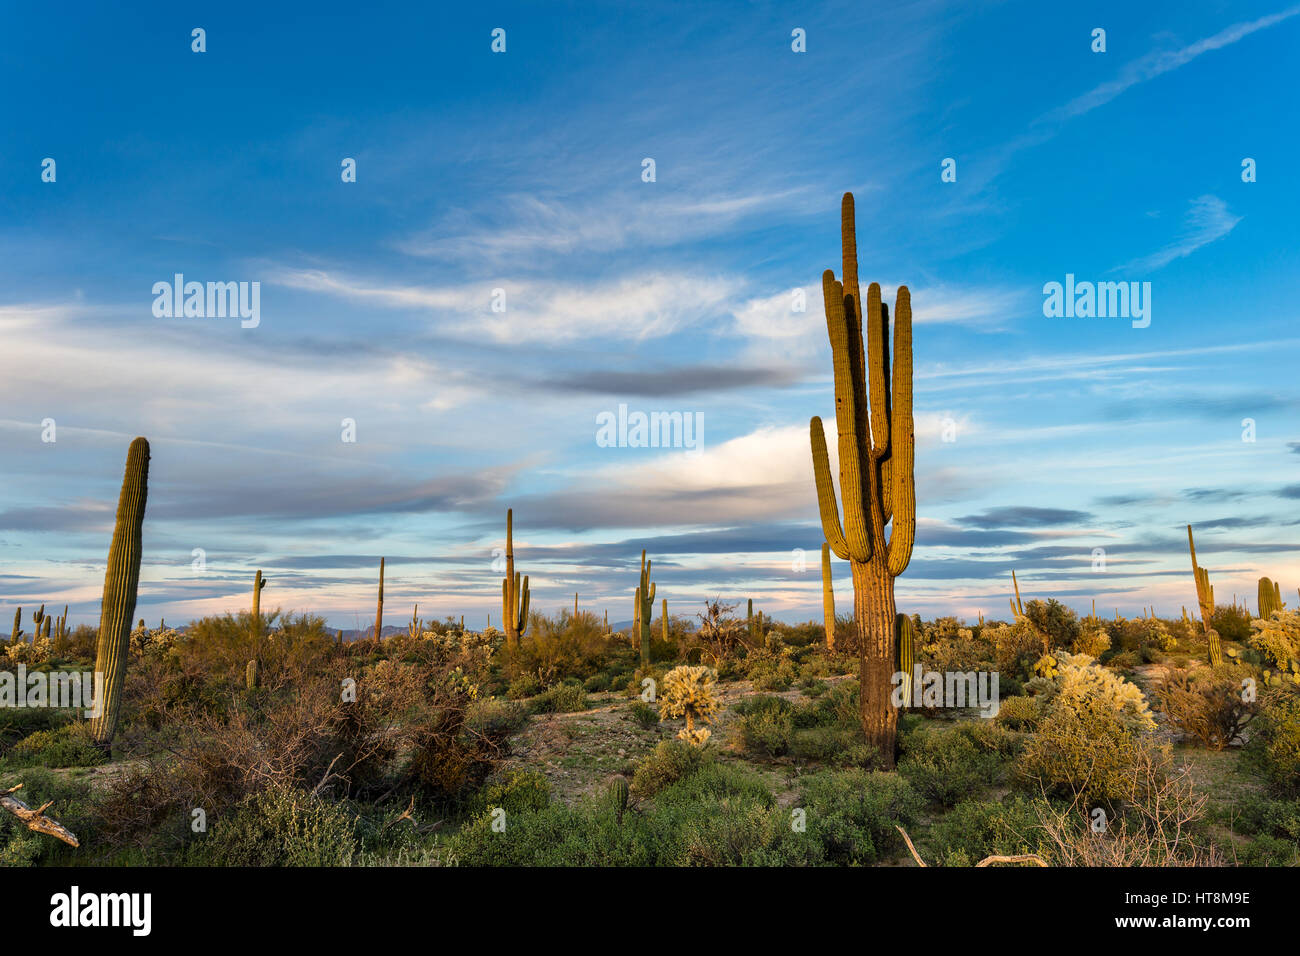 Paysage pittoresque du désert de l'Arizona avec cactus Saguaro et ciel bleu Banque D'Images